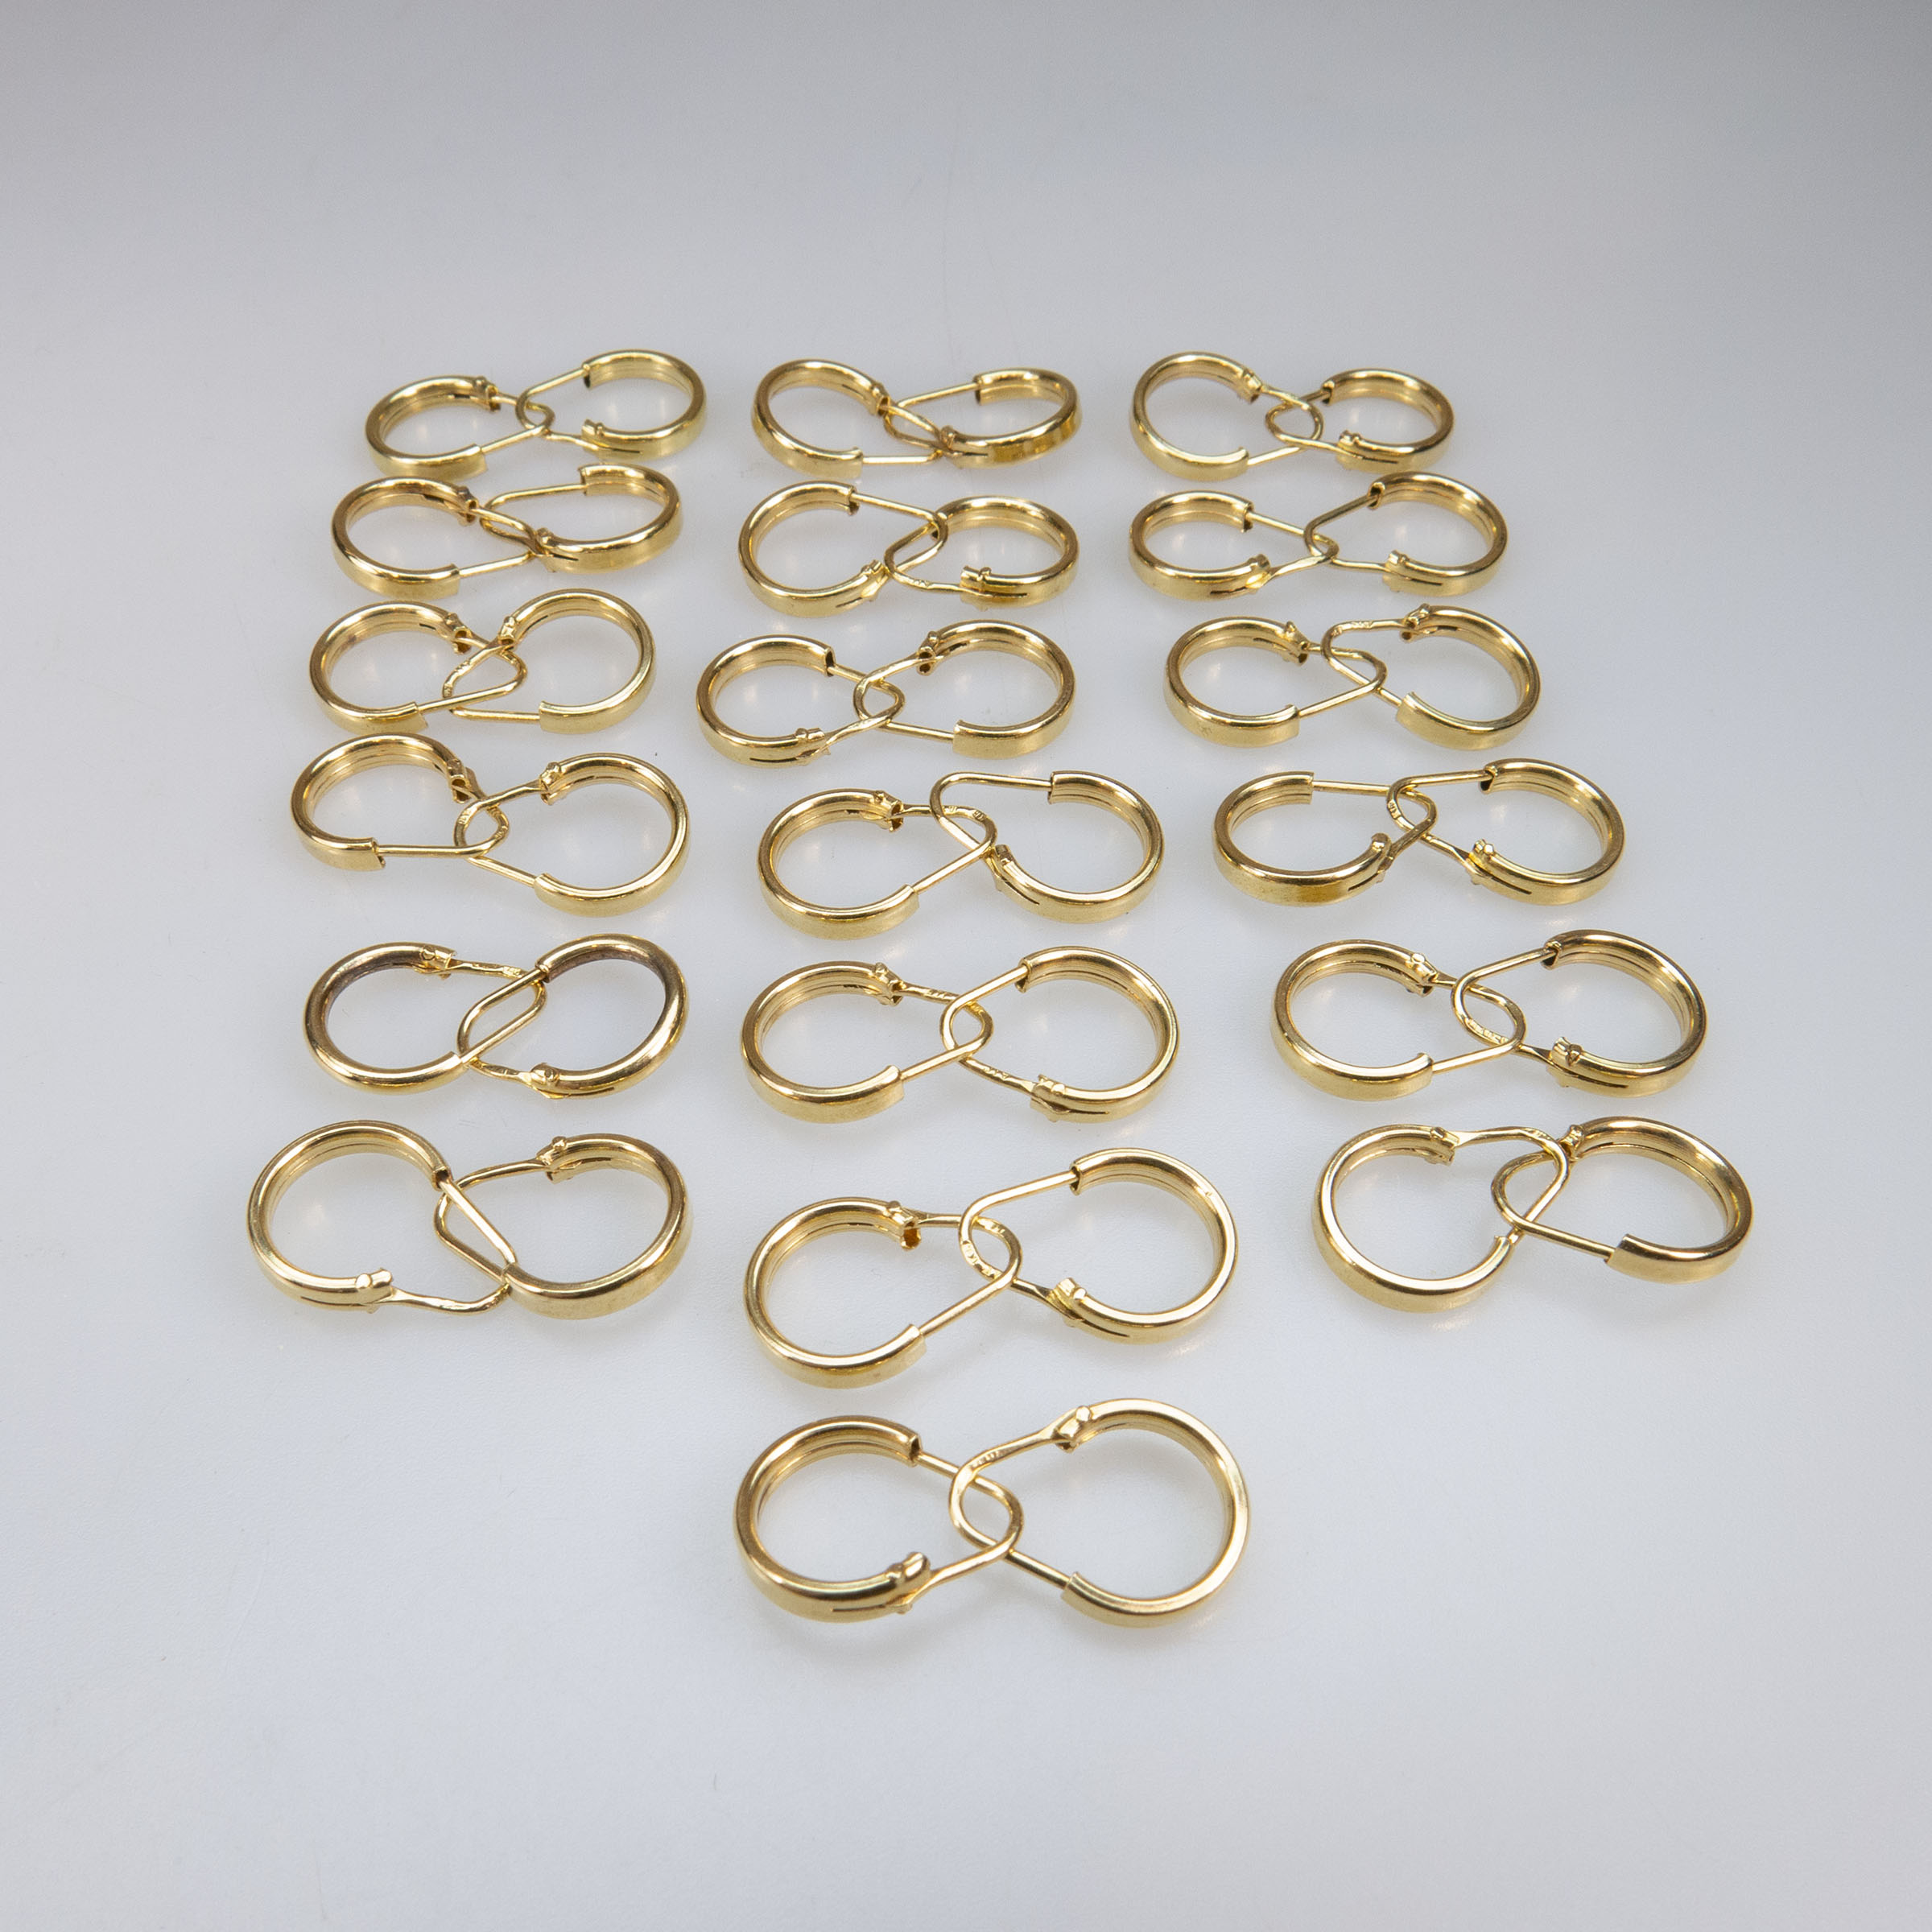 19 Pairs Of 18k Yellow Gold Hoop Earrings